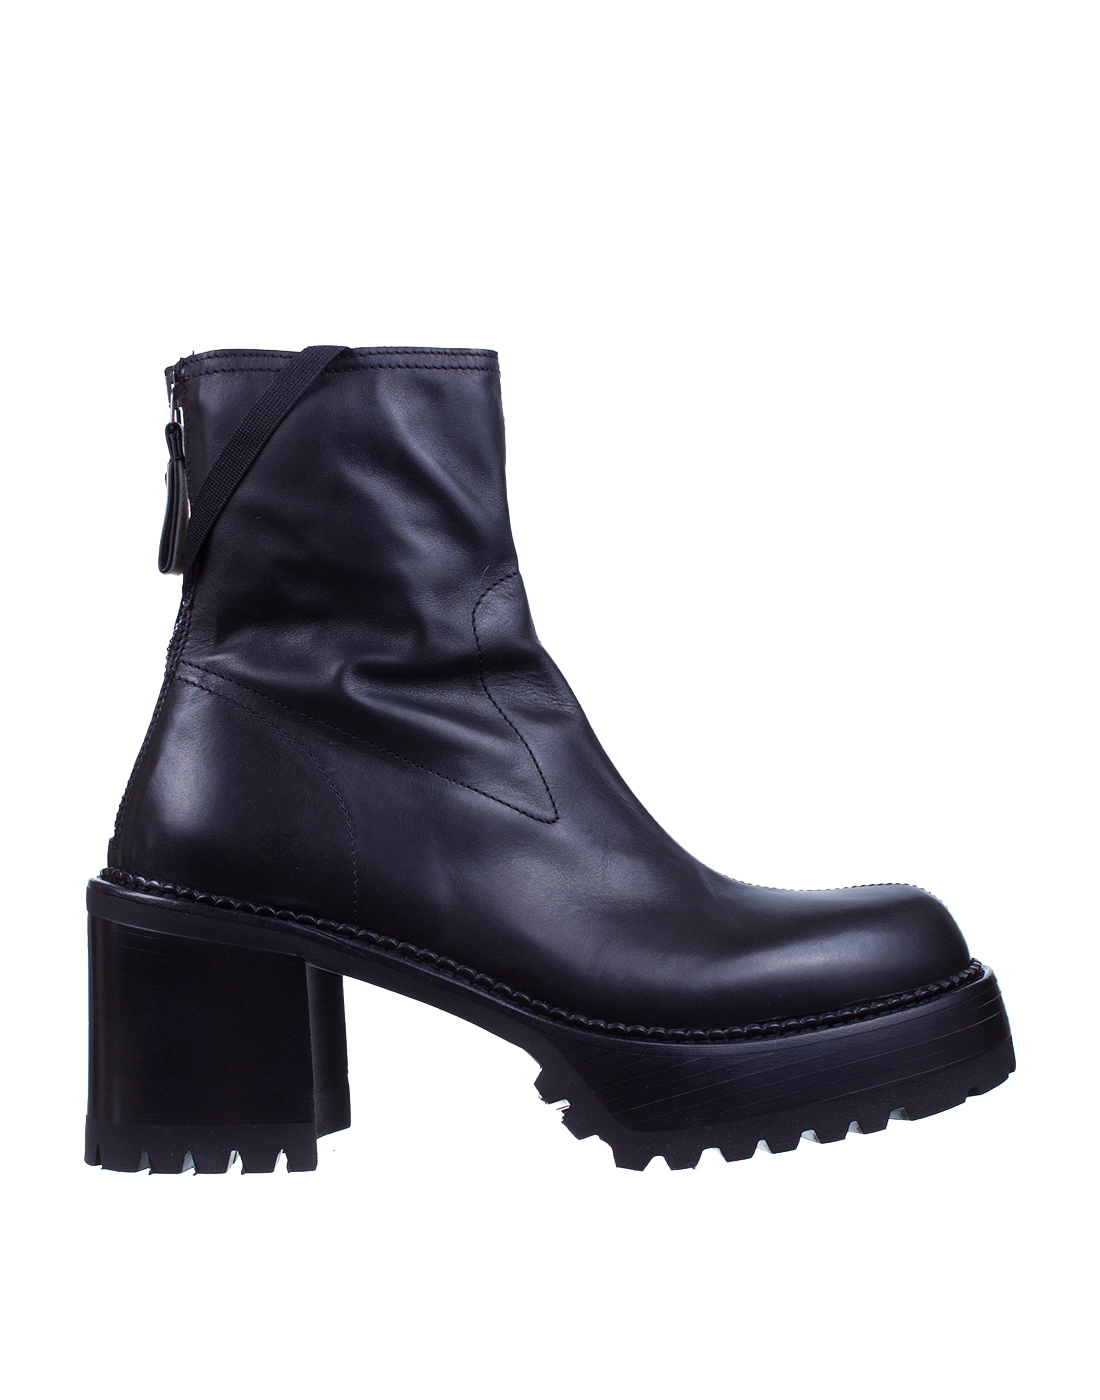 Ботинки черные женские Premiata SM3798-1